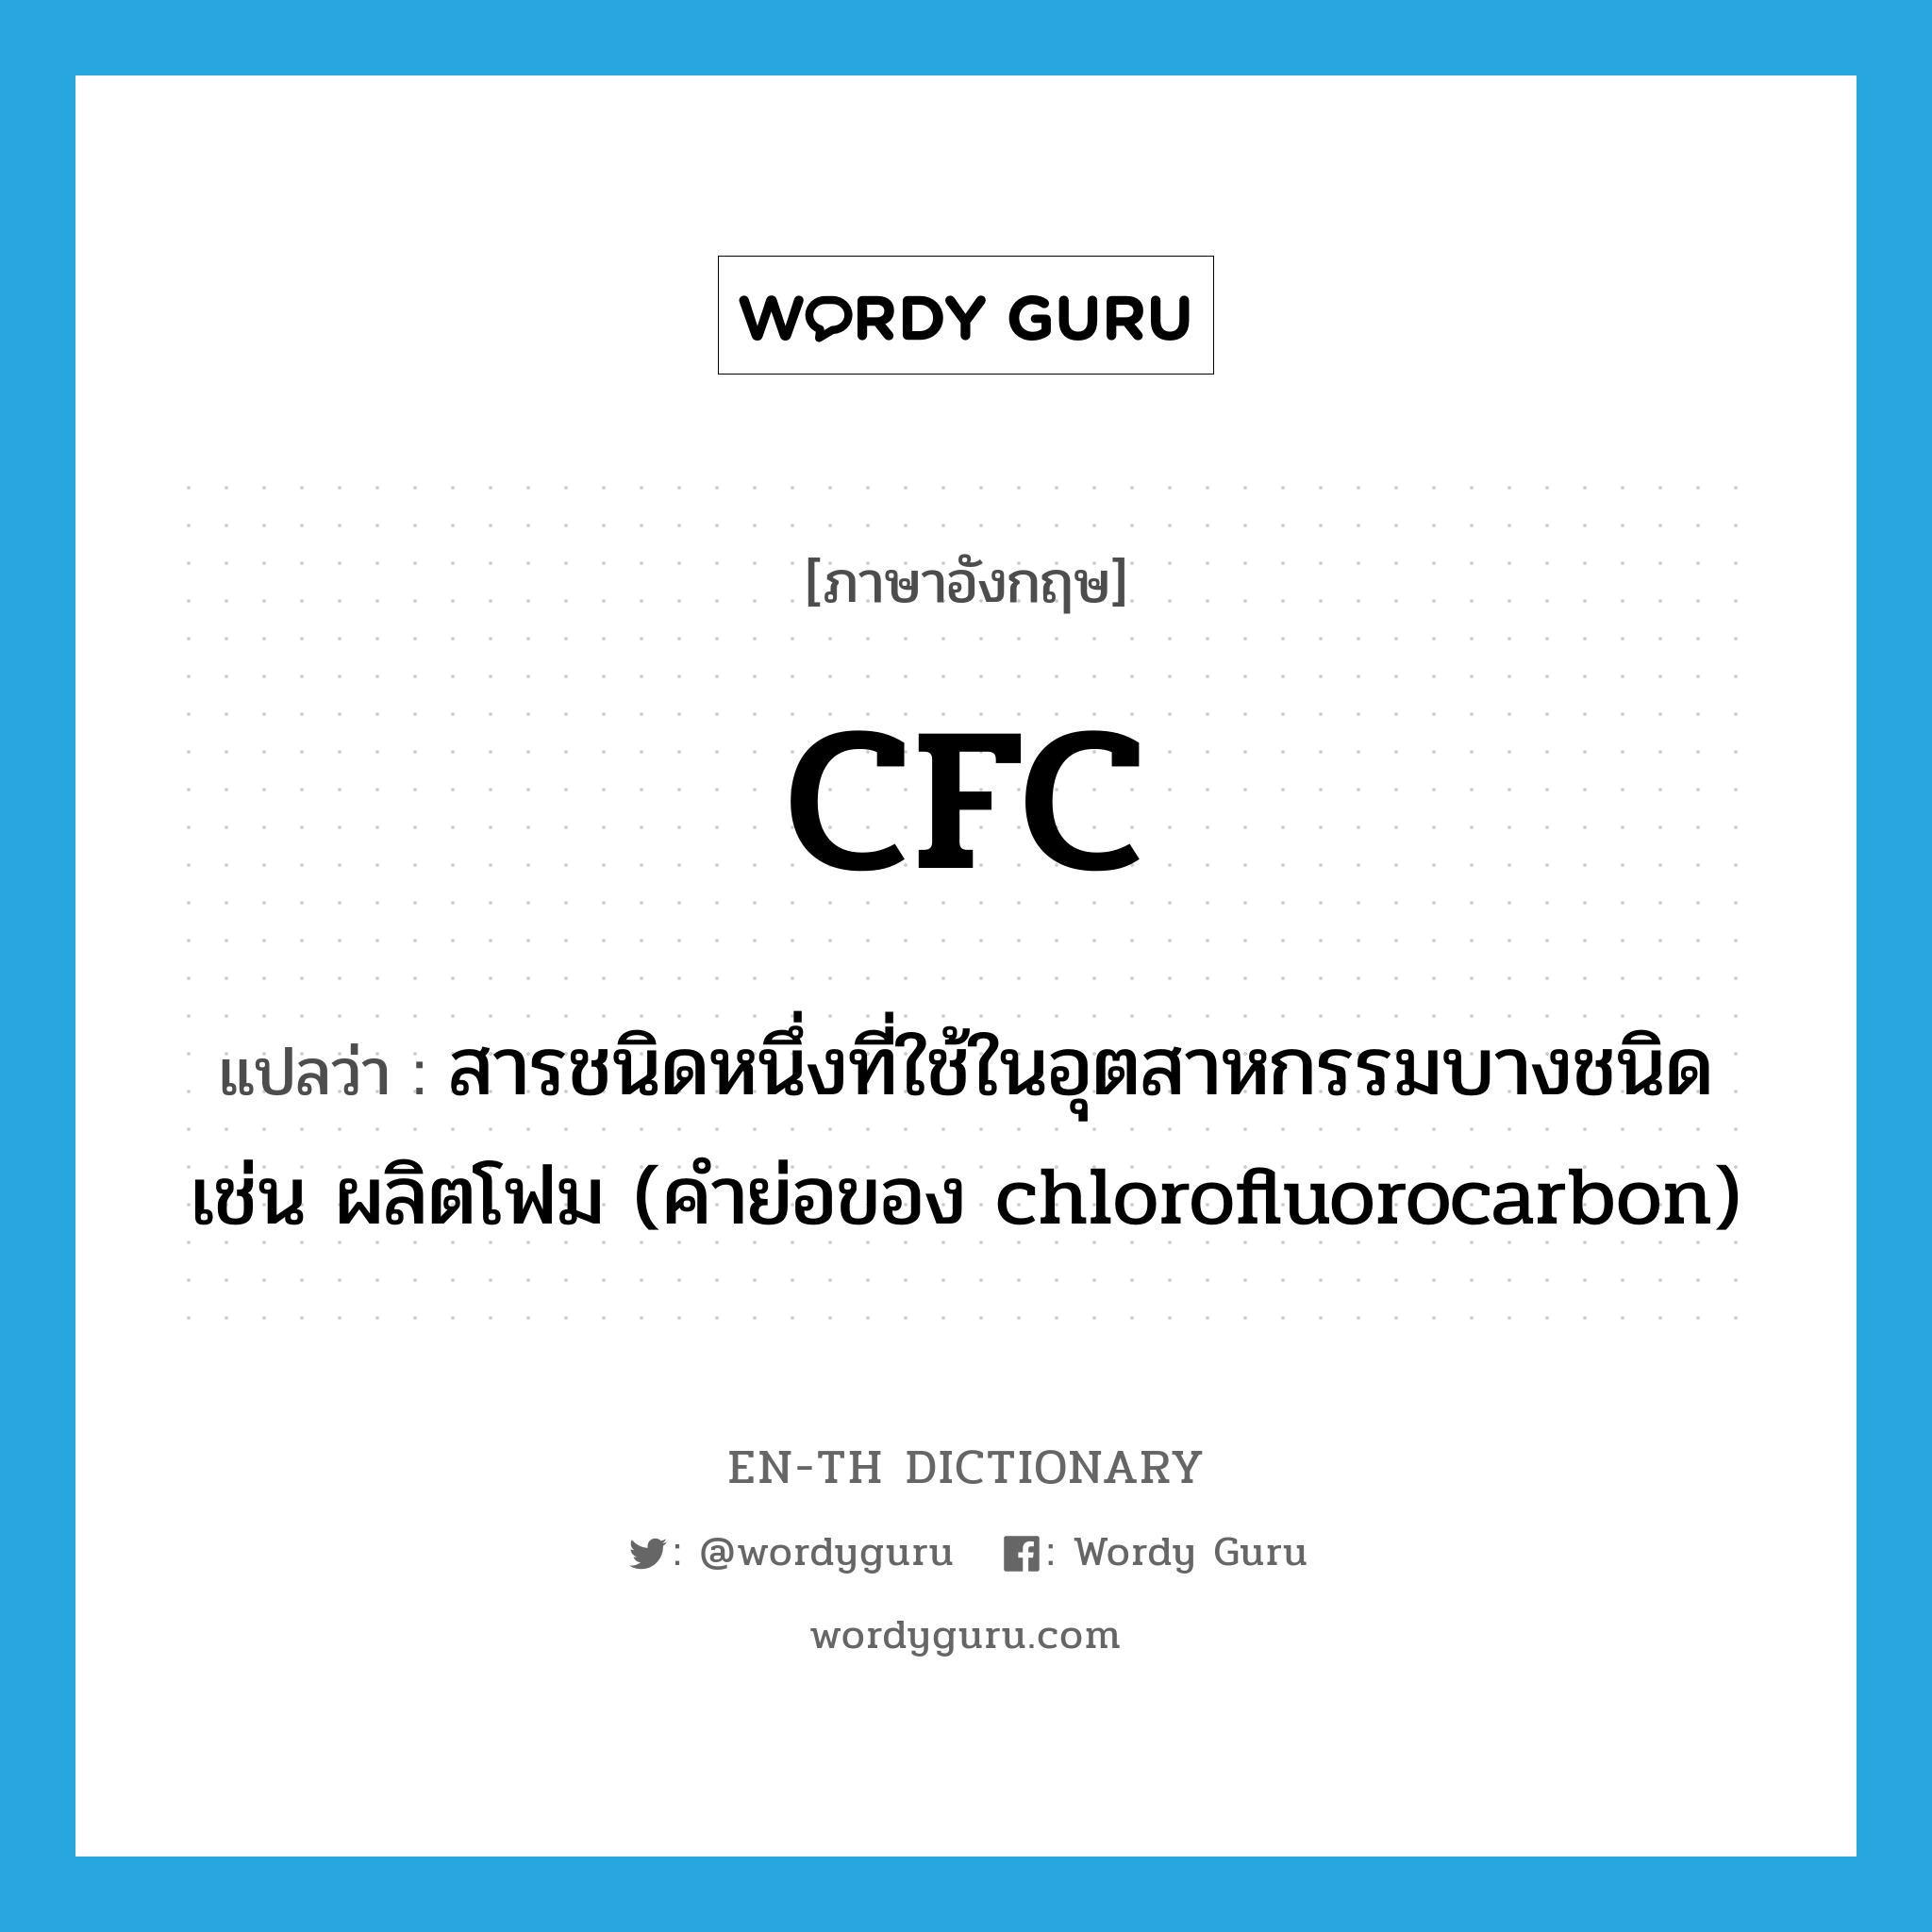 สารชนิดหนึ่งที่ใช้ในอุตสาหกรรมบางชนิด เช่น ผลิตโฟม (คำย่อของ chlorofluorocarbon) ภาษาอังกฤษ?, คำศัพท์ภาษาอังกฤษ สารชนิดหนึ่งที่ใช้ในอุตสาหกรรมบางชนิด เช่น ผลิตโฟม (คำย่อของ chlorofluorocarbon) แปลว่า CFC ประเภท N หมวด N